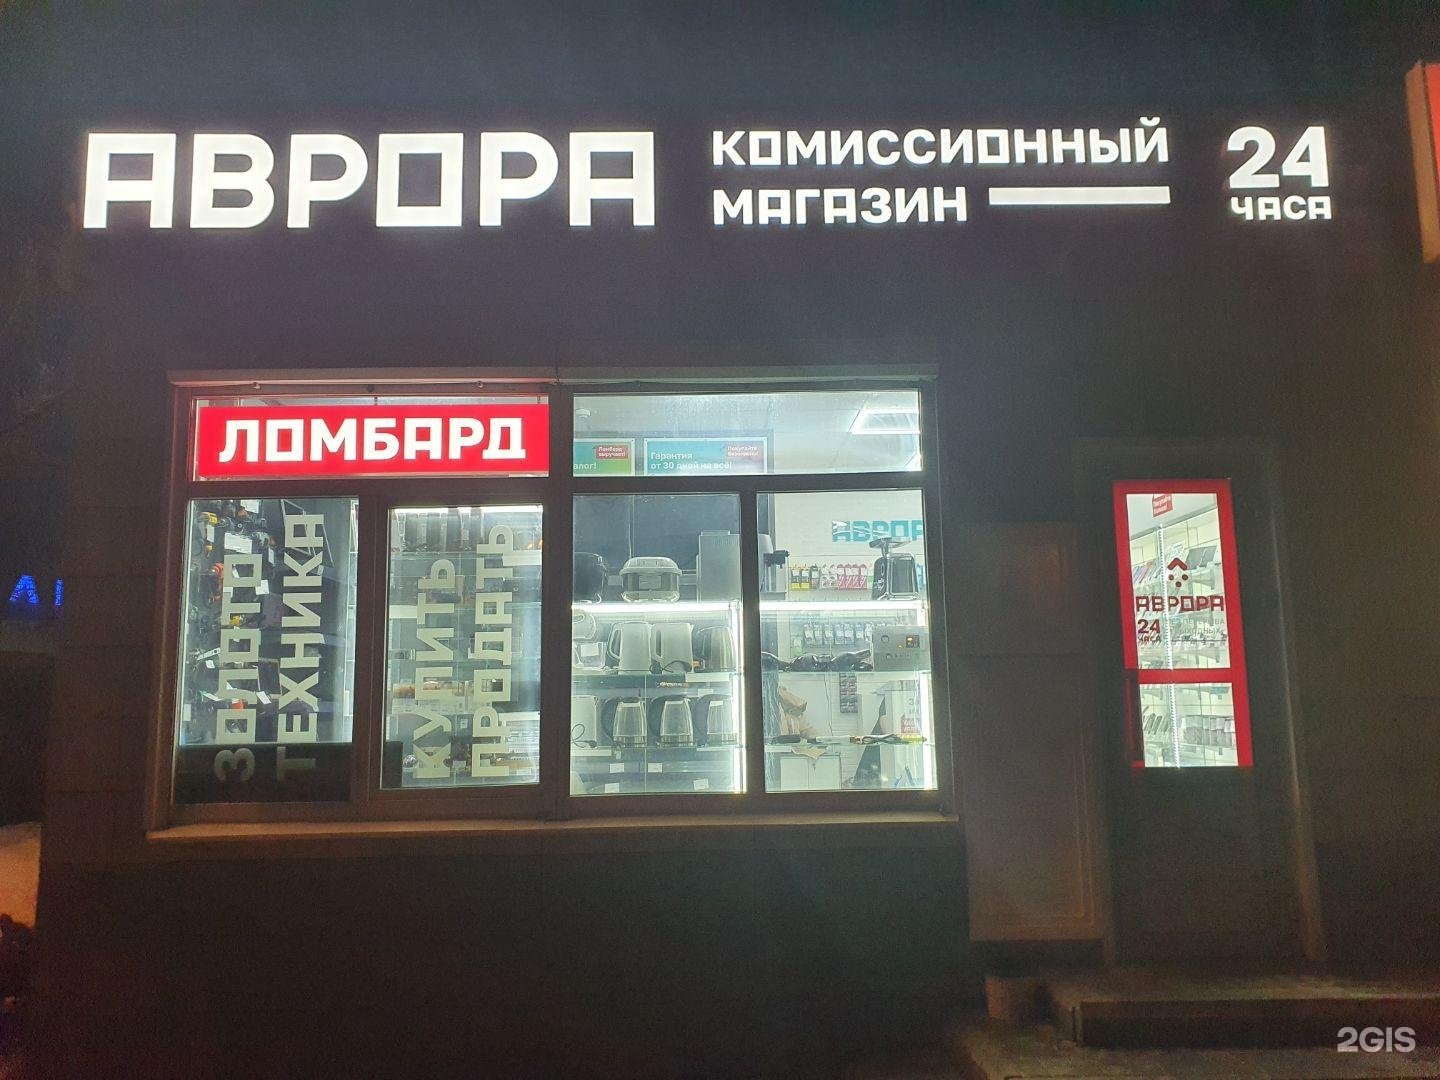 Комиссионный магазин севастополь